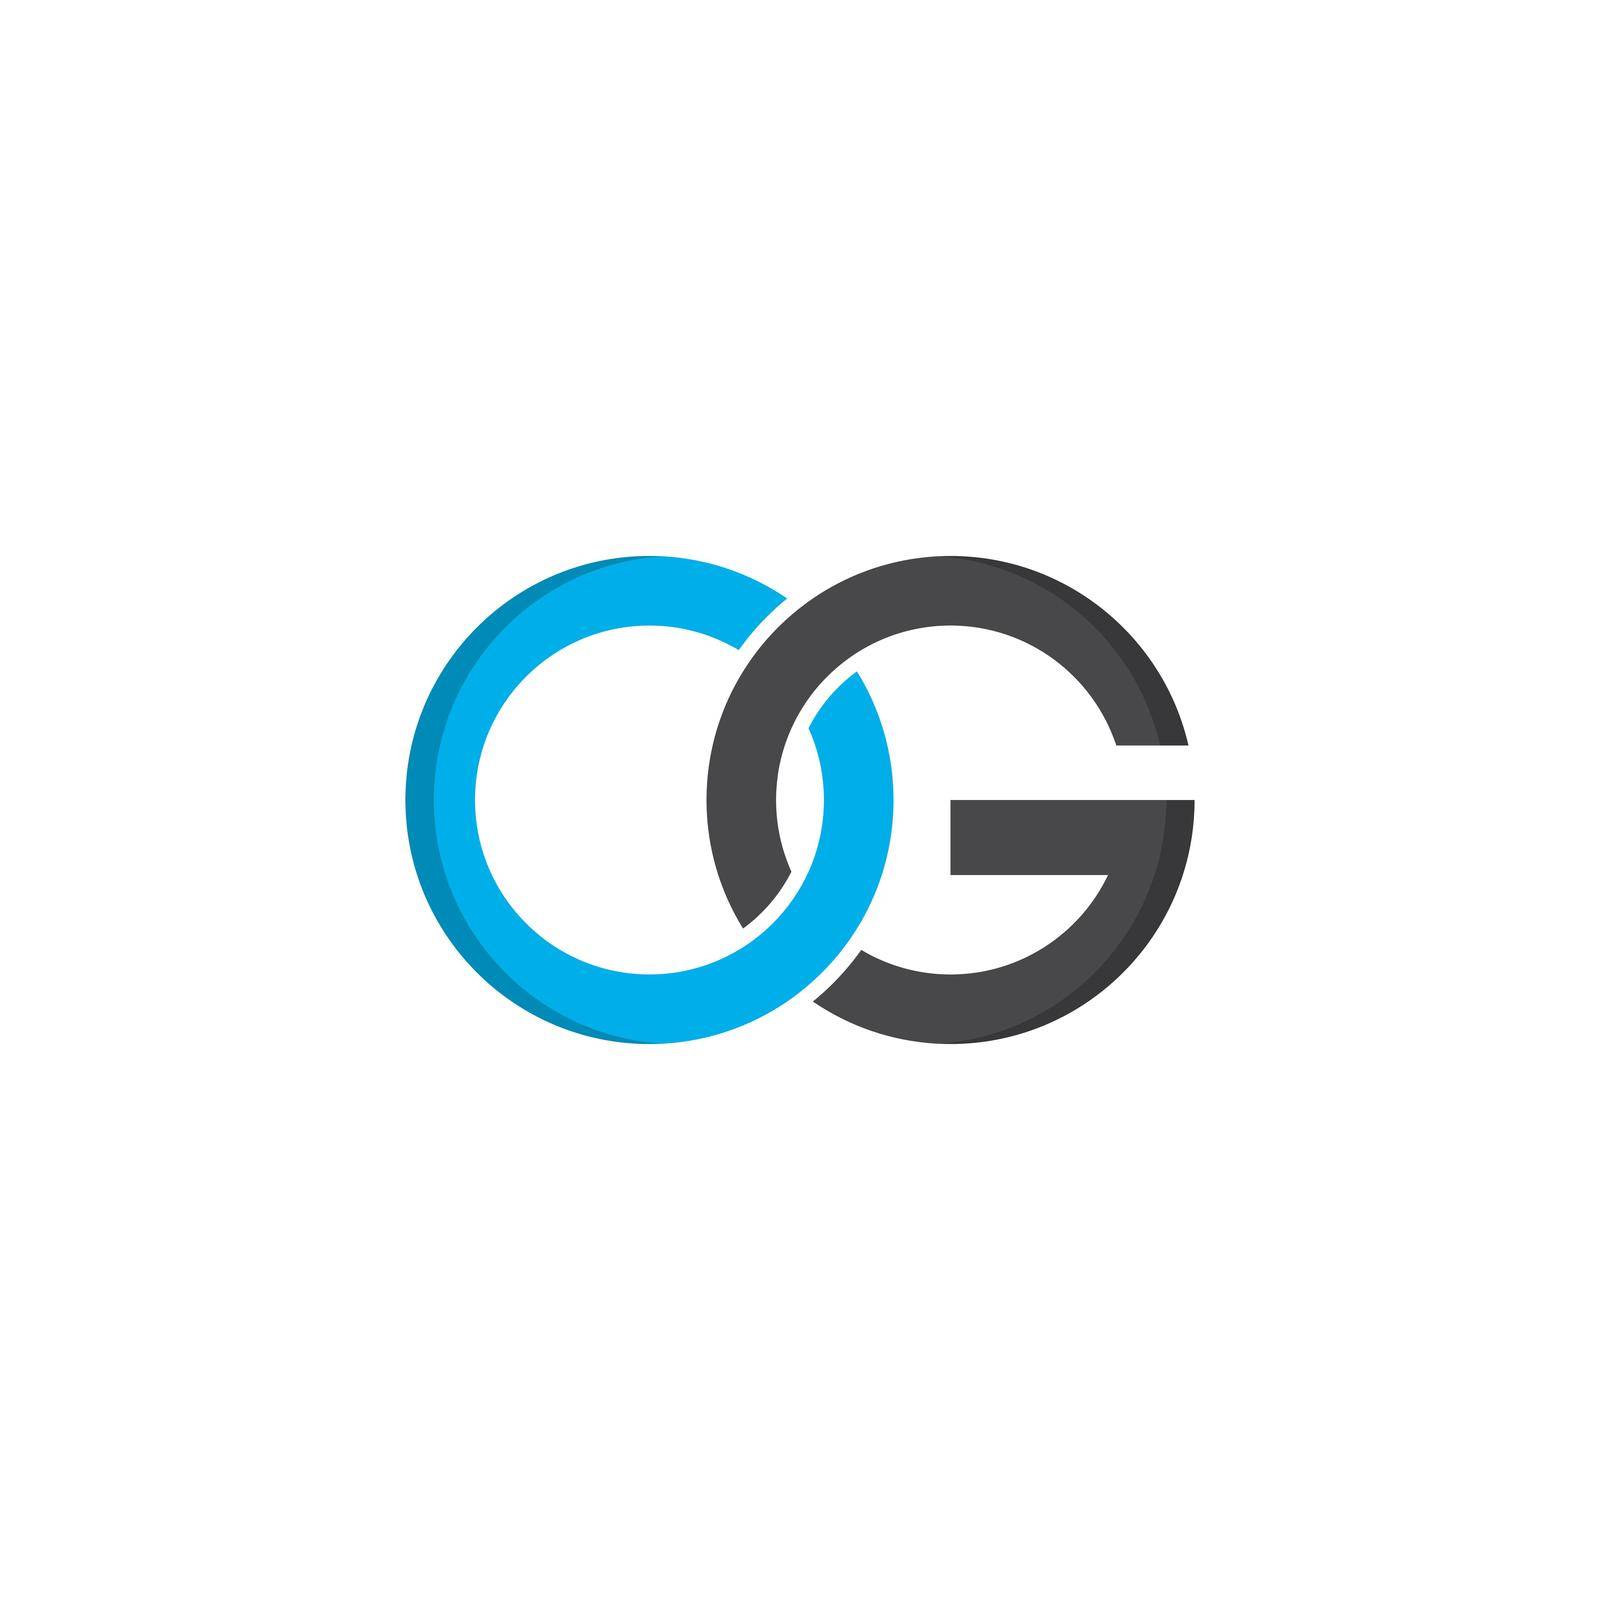 letter OG logo vector icon illustration by kosasihindra55